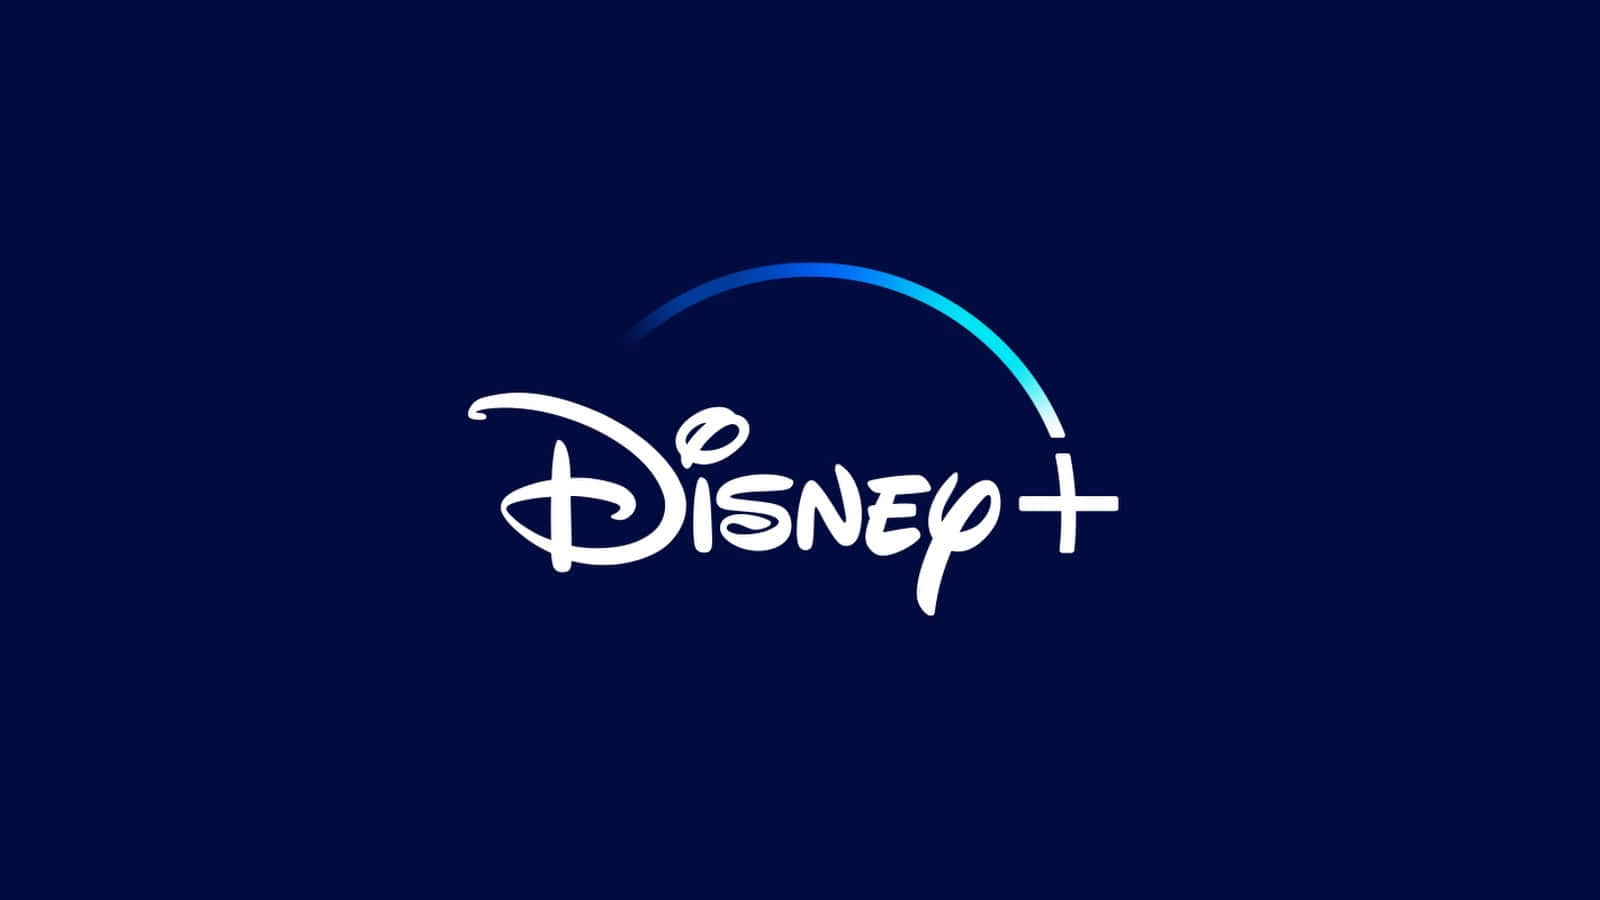 Disneyplus 1600 X 900 Hintergrund